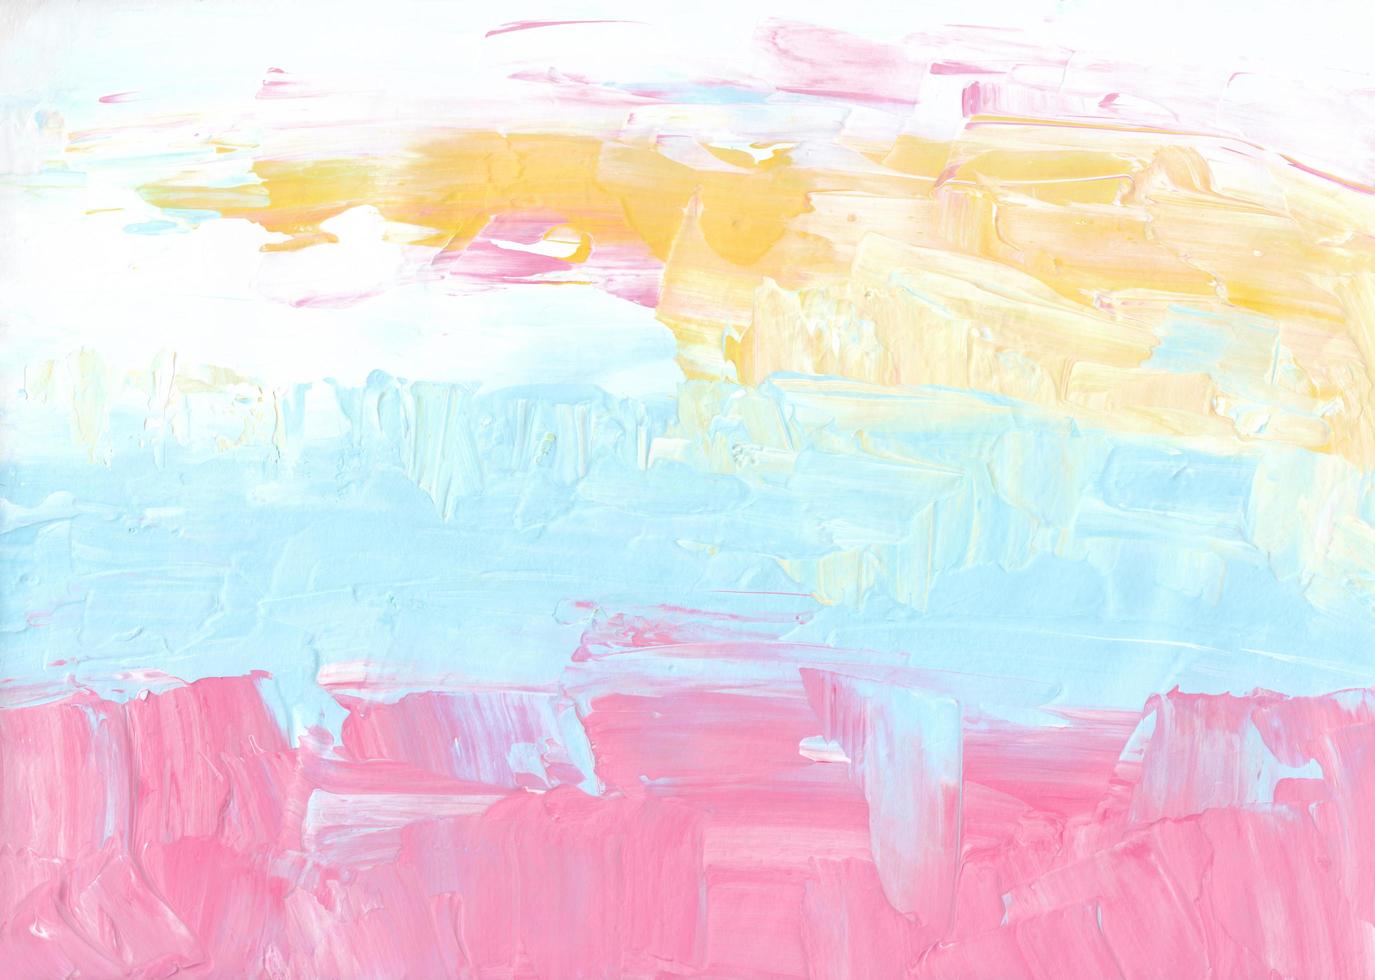 abstrait pastel rose, jaune, blanc, bleu. coups de pinceau texturés sur papier. toile de fond artistique colorée. peinture à l'huile contemporaine photo